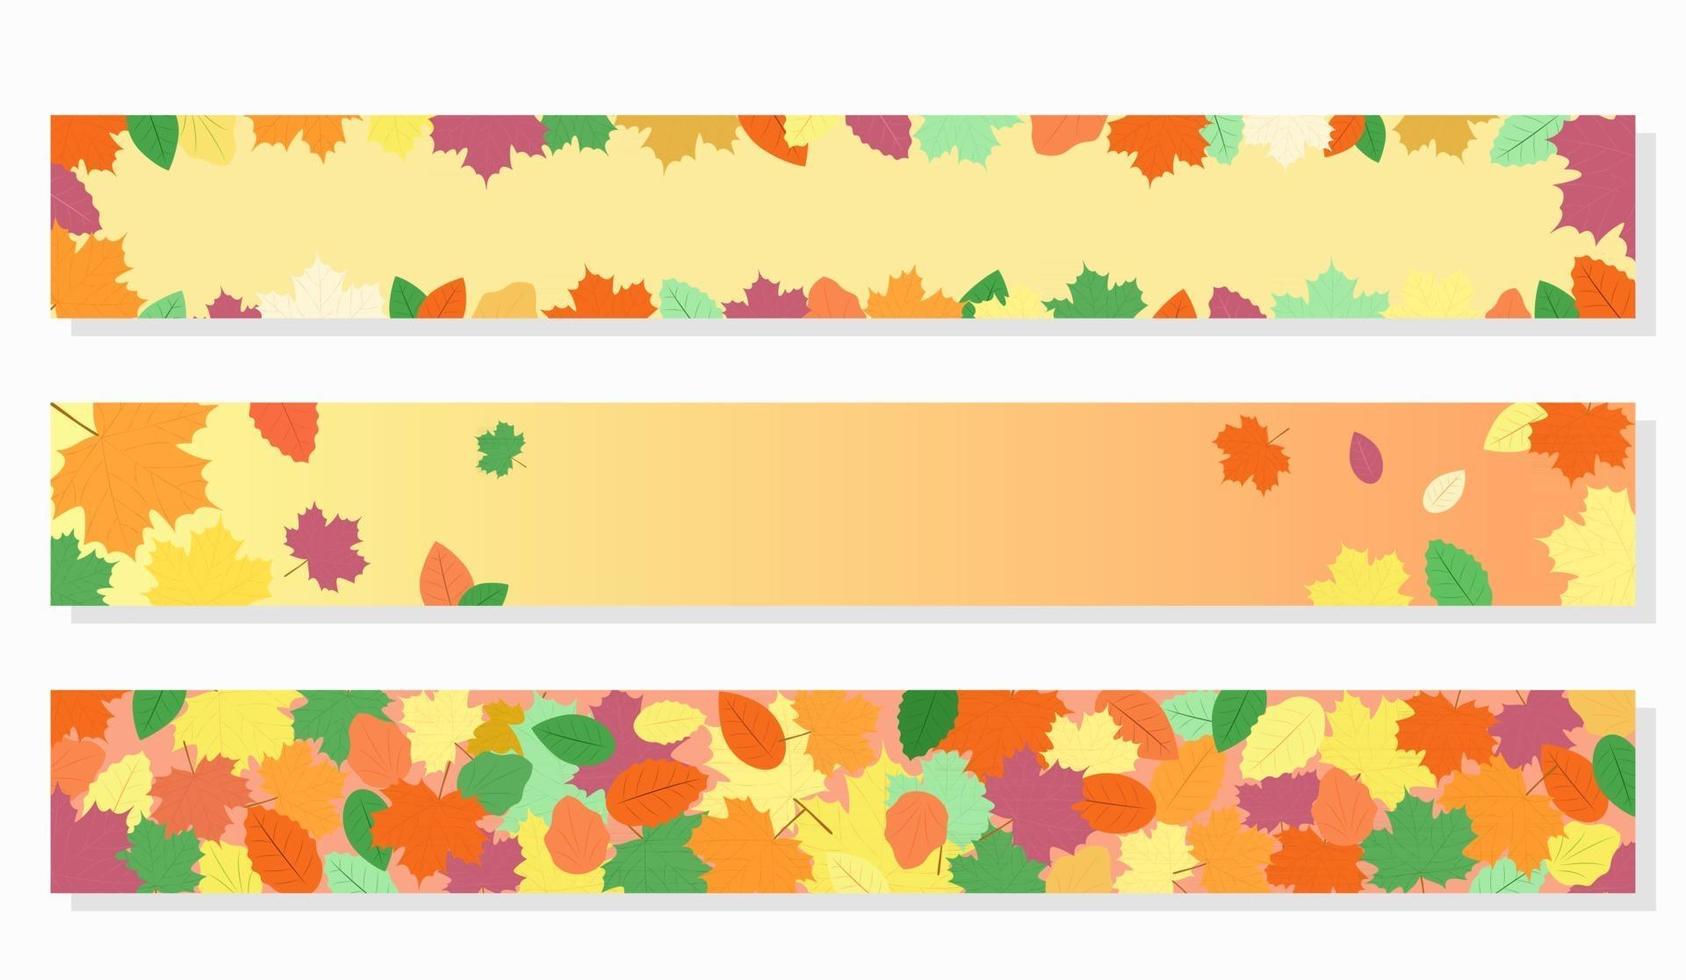 bannières web d'automne. ensemble de vecteurs de modèles. feuilles d'automne sur fond jaune et orange. les bannières conviennent aux ventes d'automne, à la conception de sites Web saisonniers vecteur